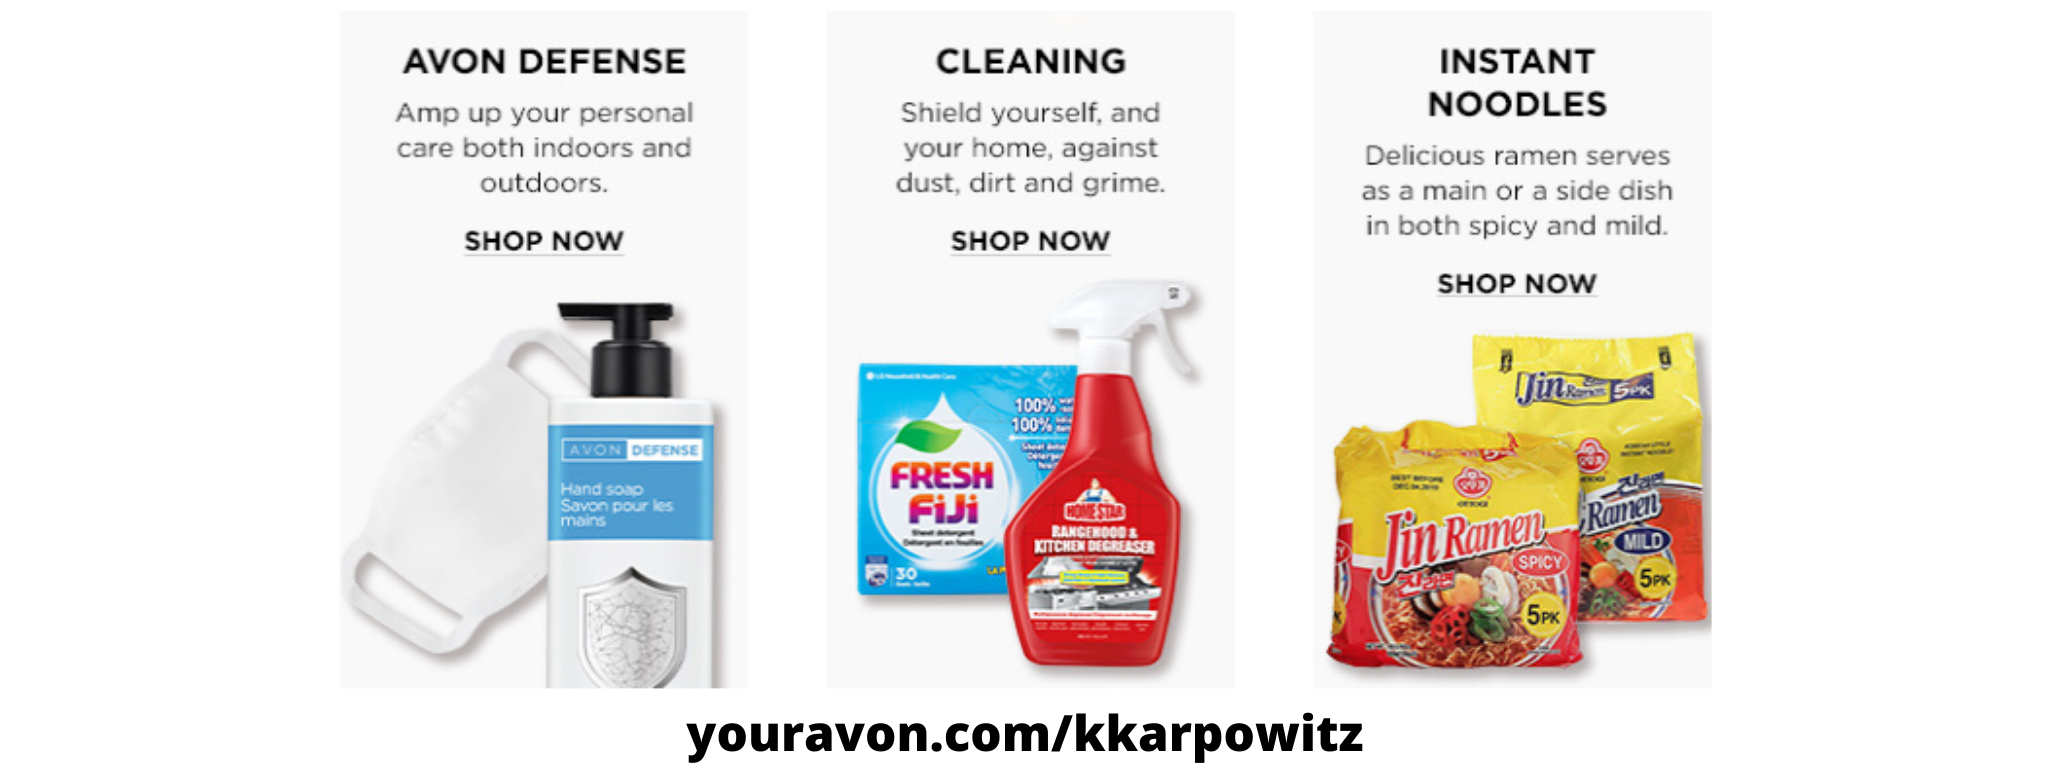 Buy Avon Online-Avon Home-Self Care.jpg